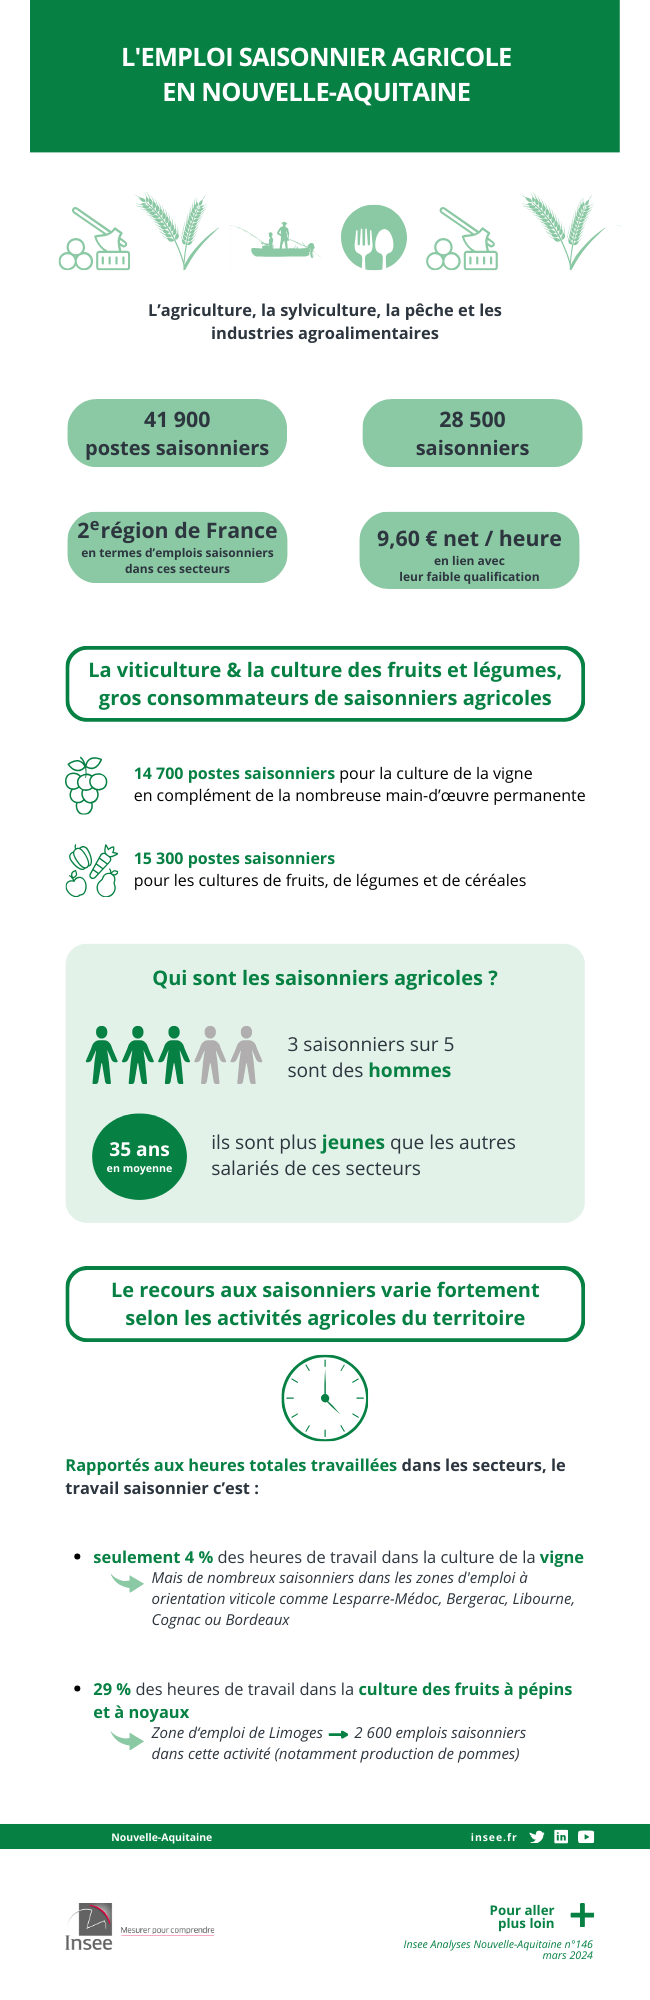 L'emploi saisonnier agricole en Nouvelle-Aquitaine